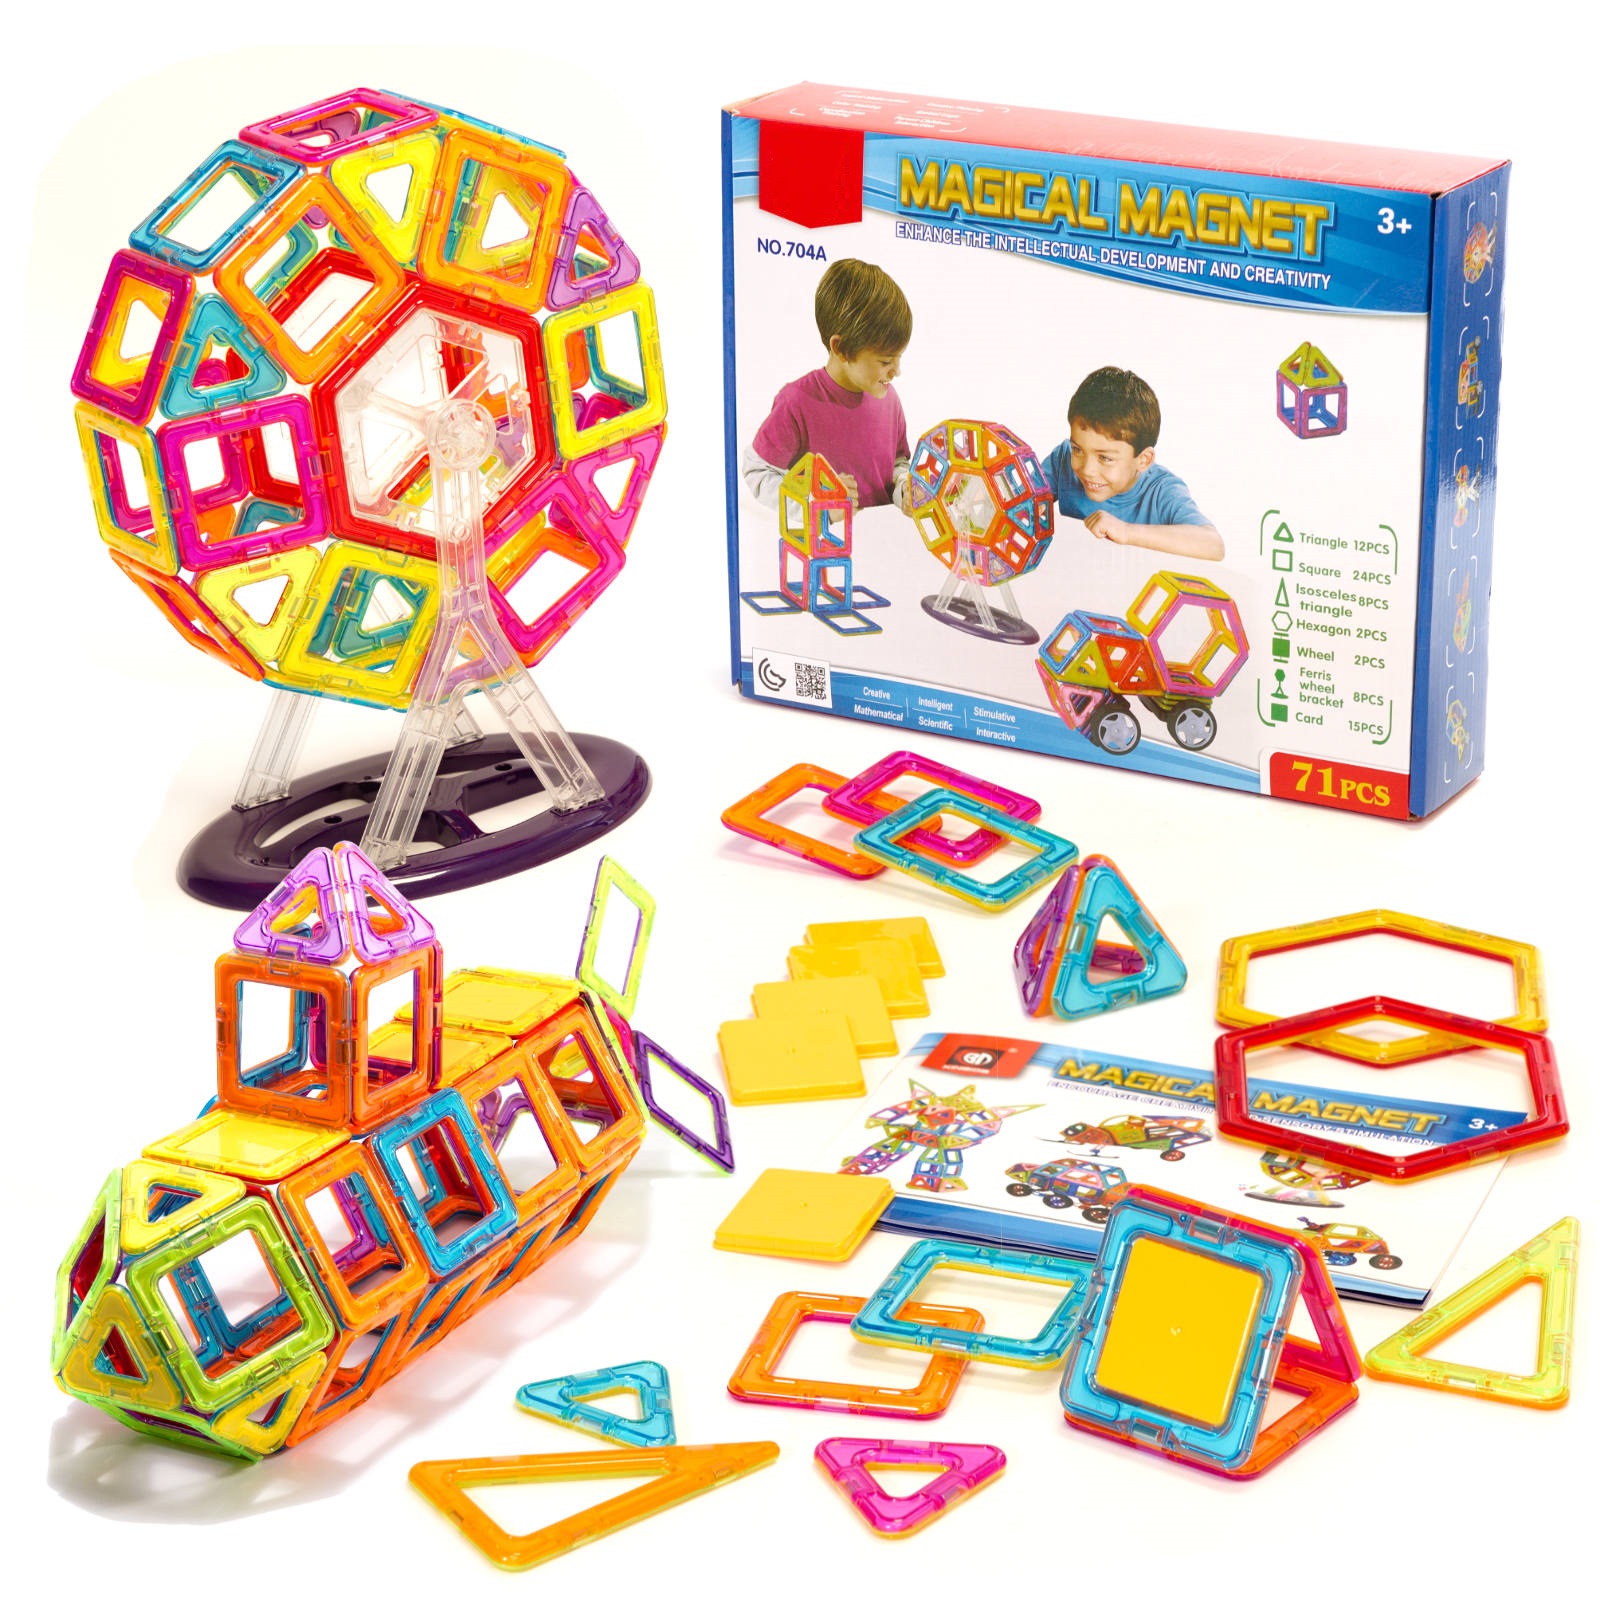 Piese magnetice pentru puzzle 71 de elemente iMK, multicolore, dezvolta imaginatia copilului